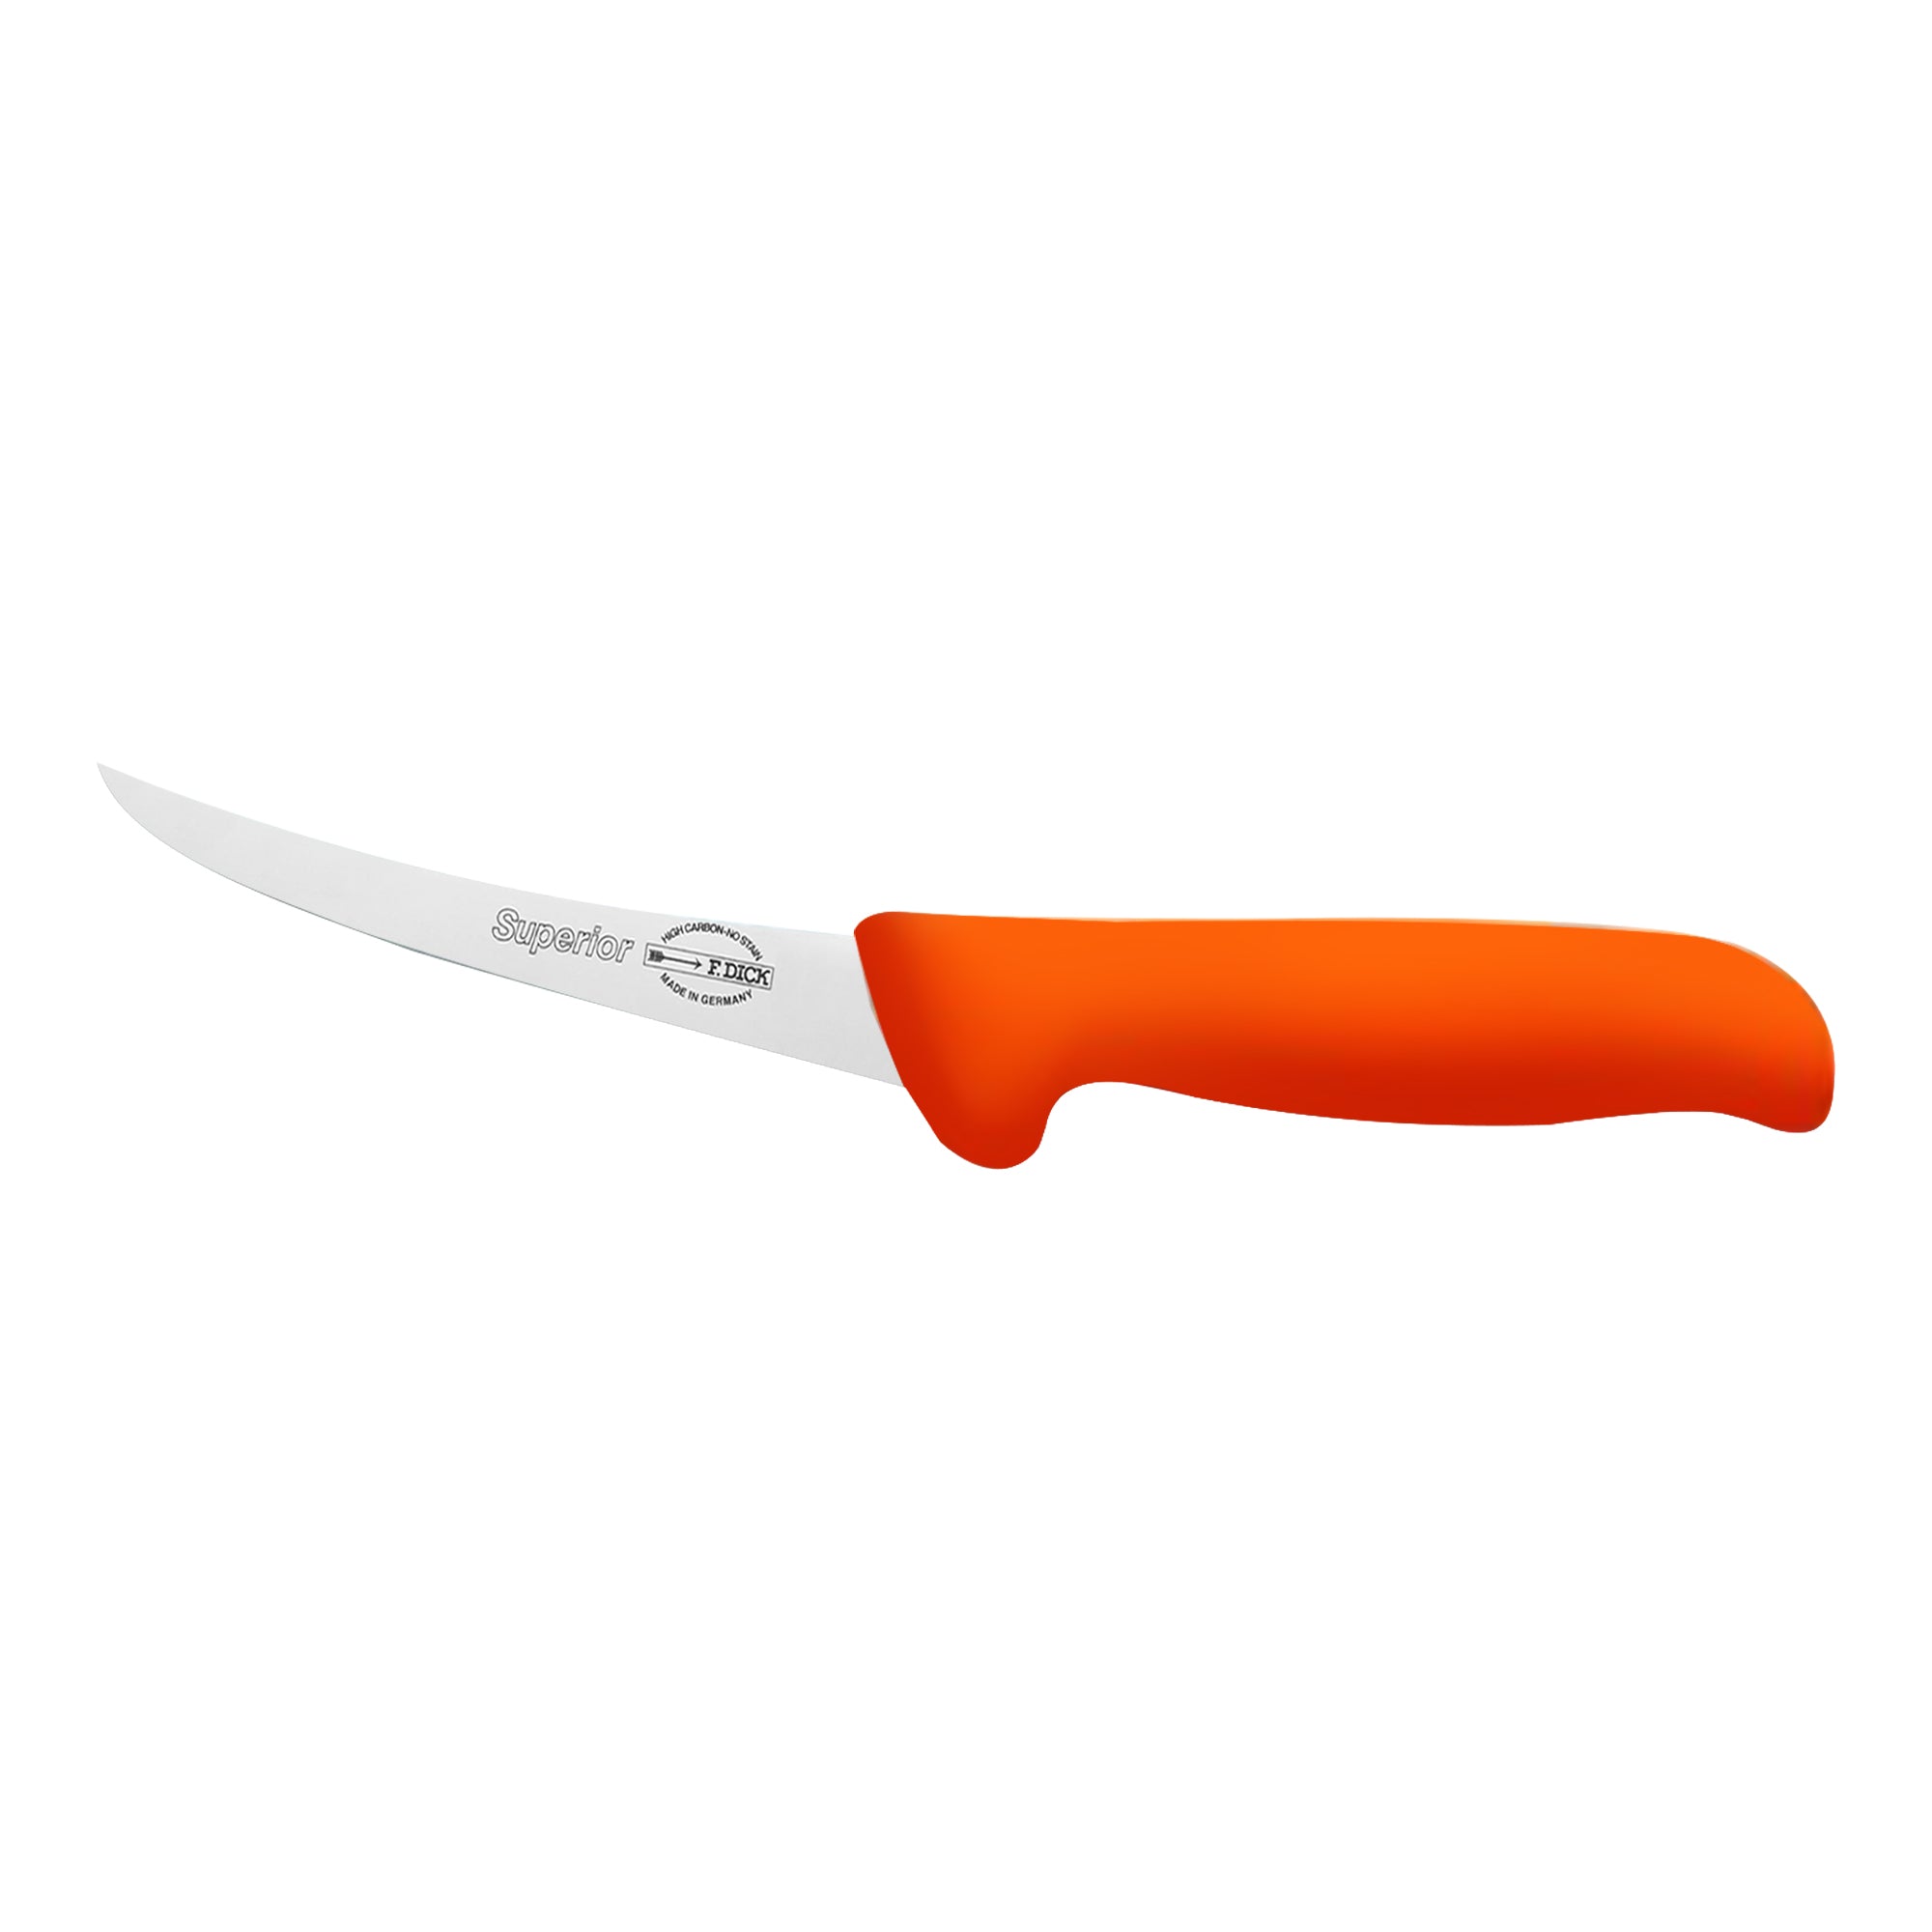 F. Нож за обезкостяване DICK с оранжева дръжка - 13 см